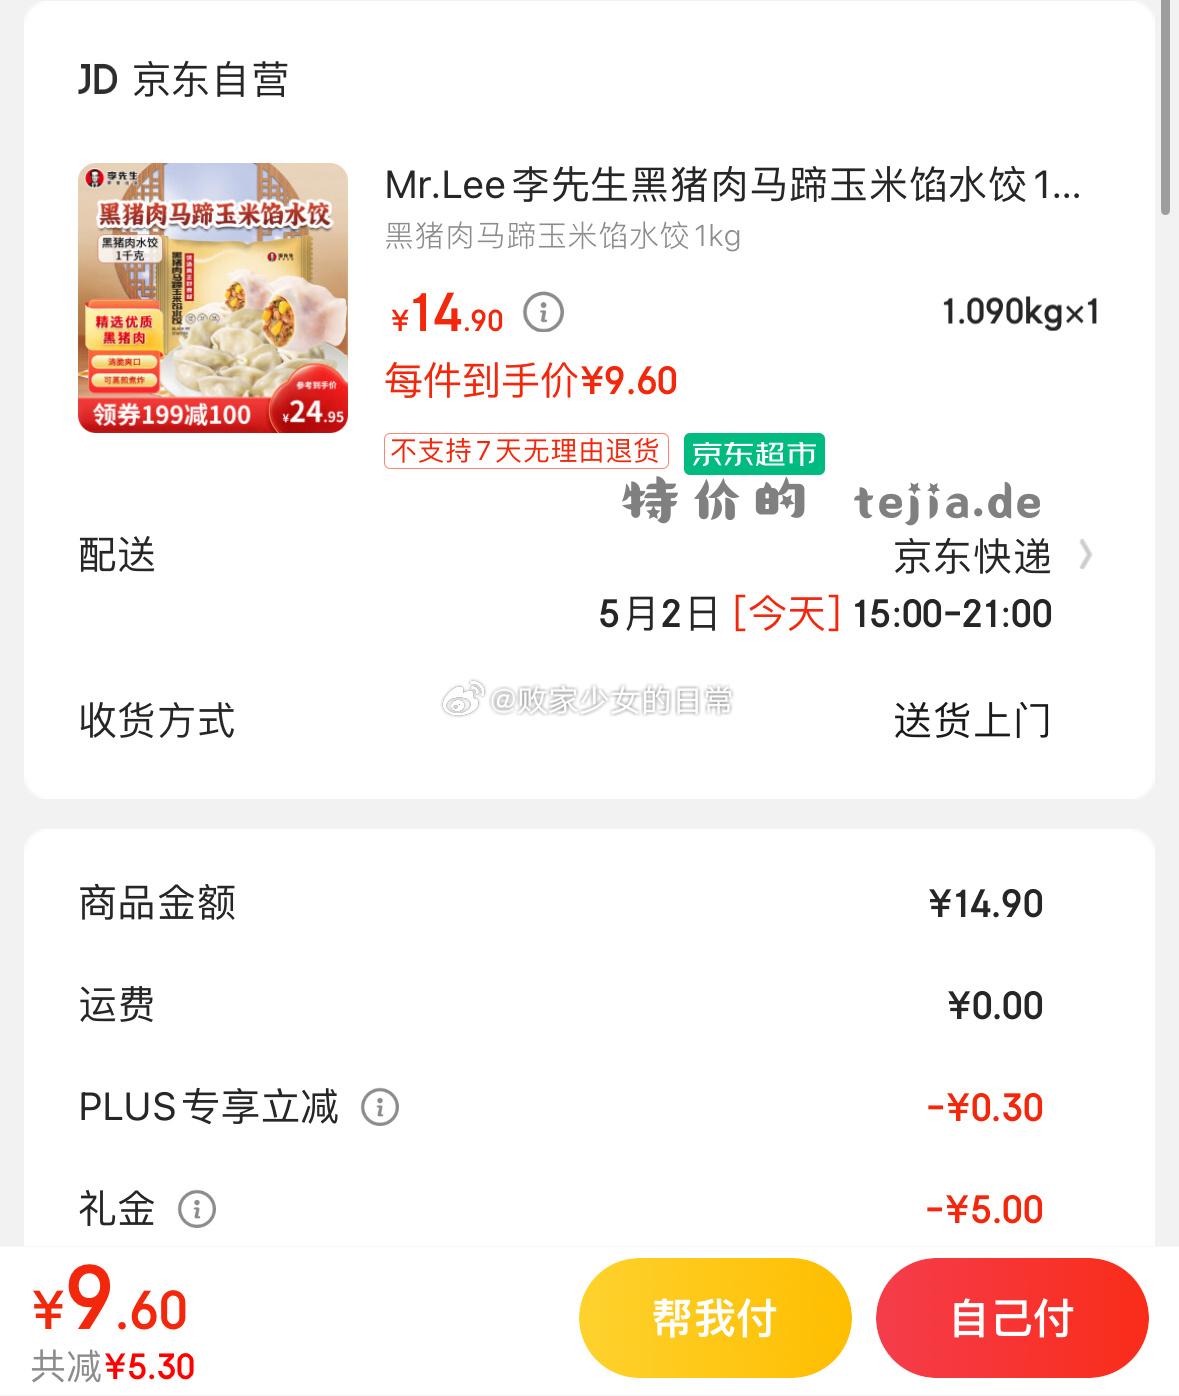 Mr.Lee李先生黑猪肉马蹄玉米馅水饺1kg 48只 叠加5首购礼金 粉丝试用plus到手9.6 - 特价的